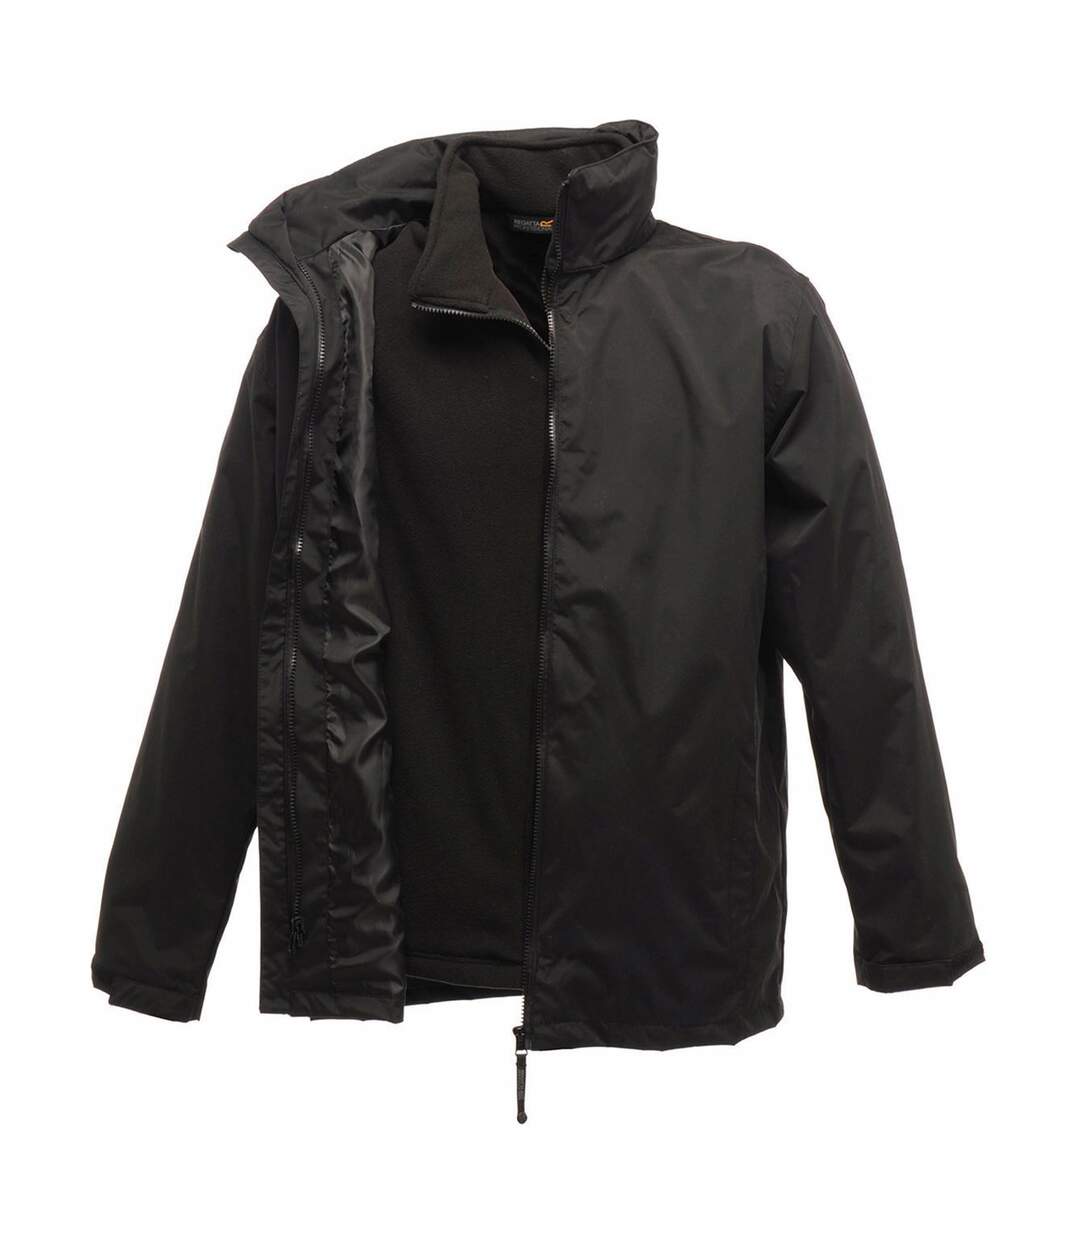 Parka veste imperméable 3 en 1 homme TRA150 - noir